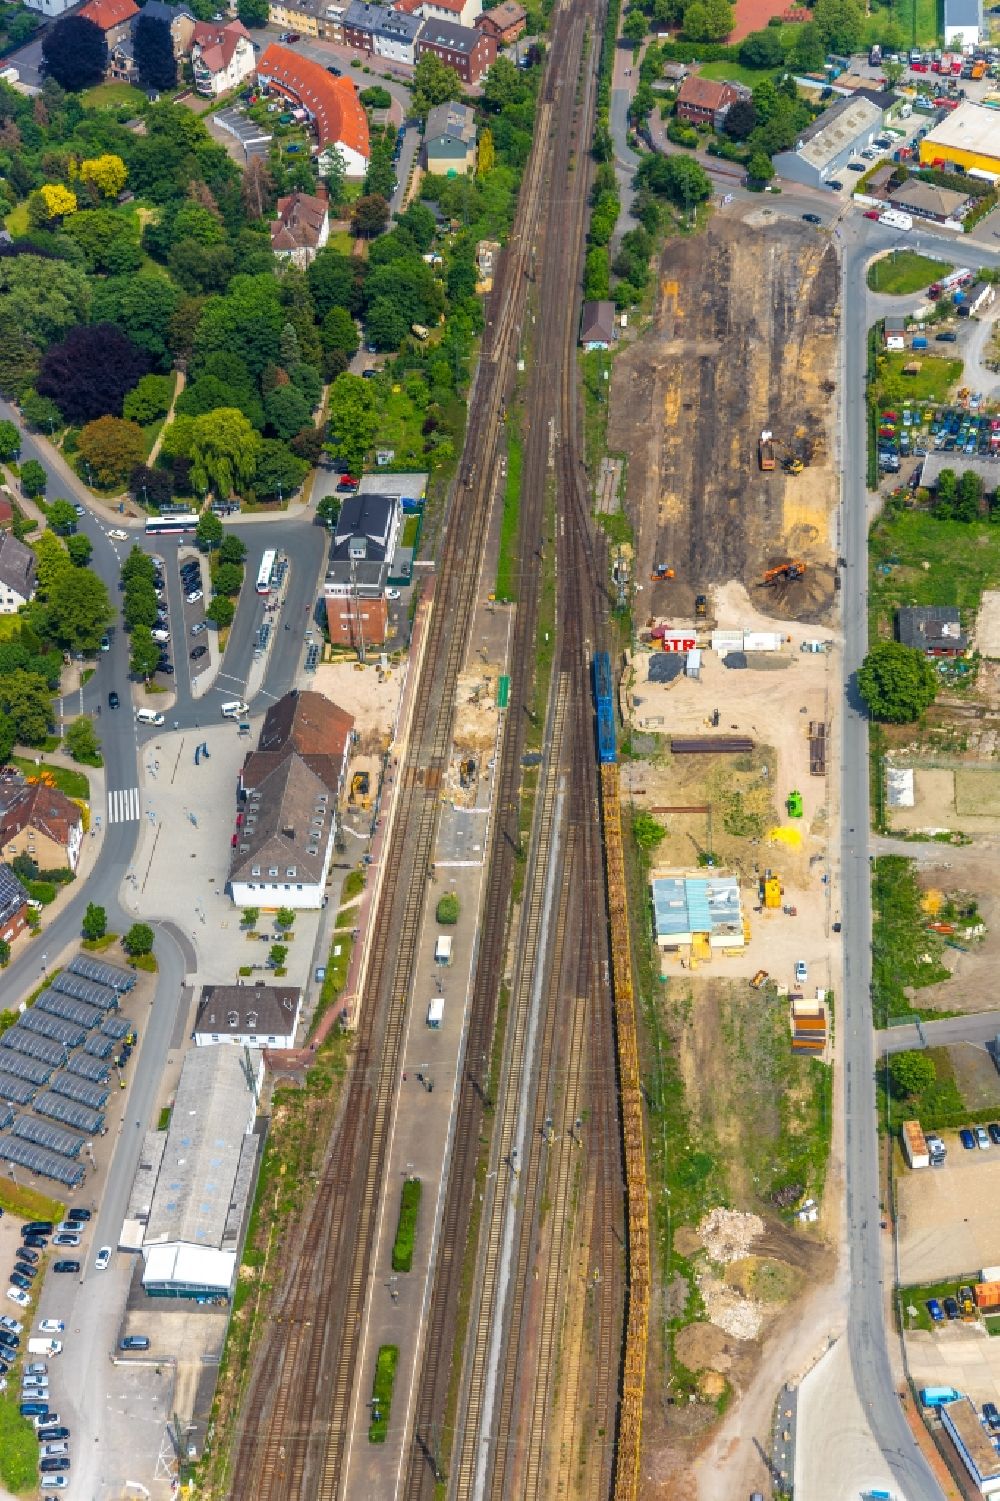 Luftbild Haltern am See - Bauarbeiten zur Sanierung am Gleisverlauf und Bahnhofsgebäude in Haltern am See im Bundesland Nordrhein-Westfalen, Deutschland